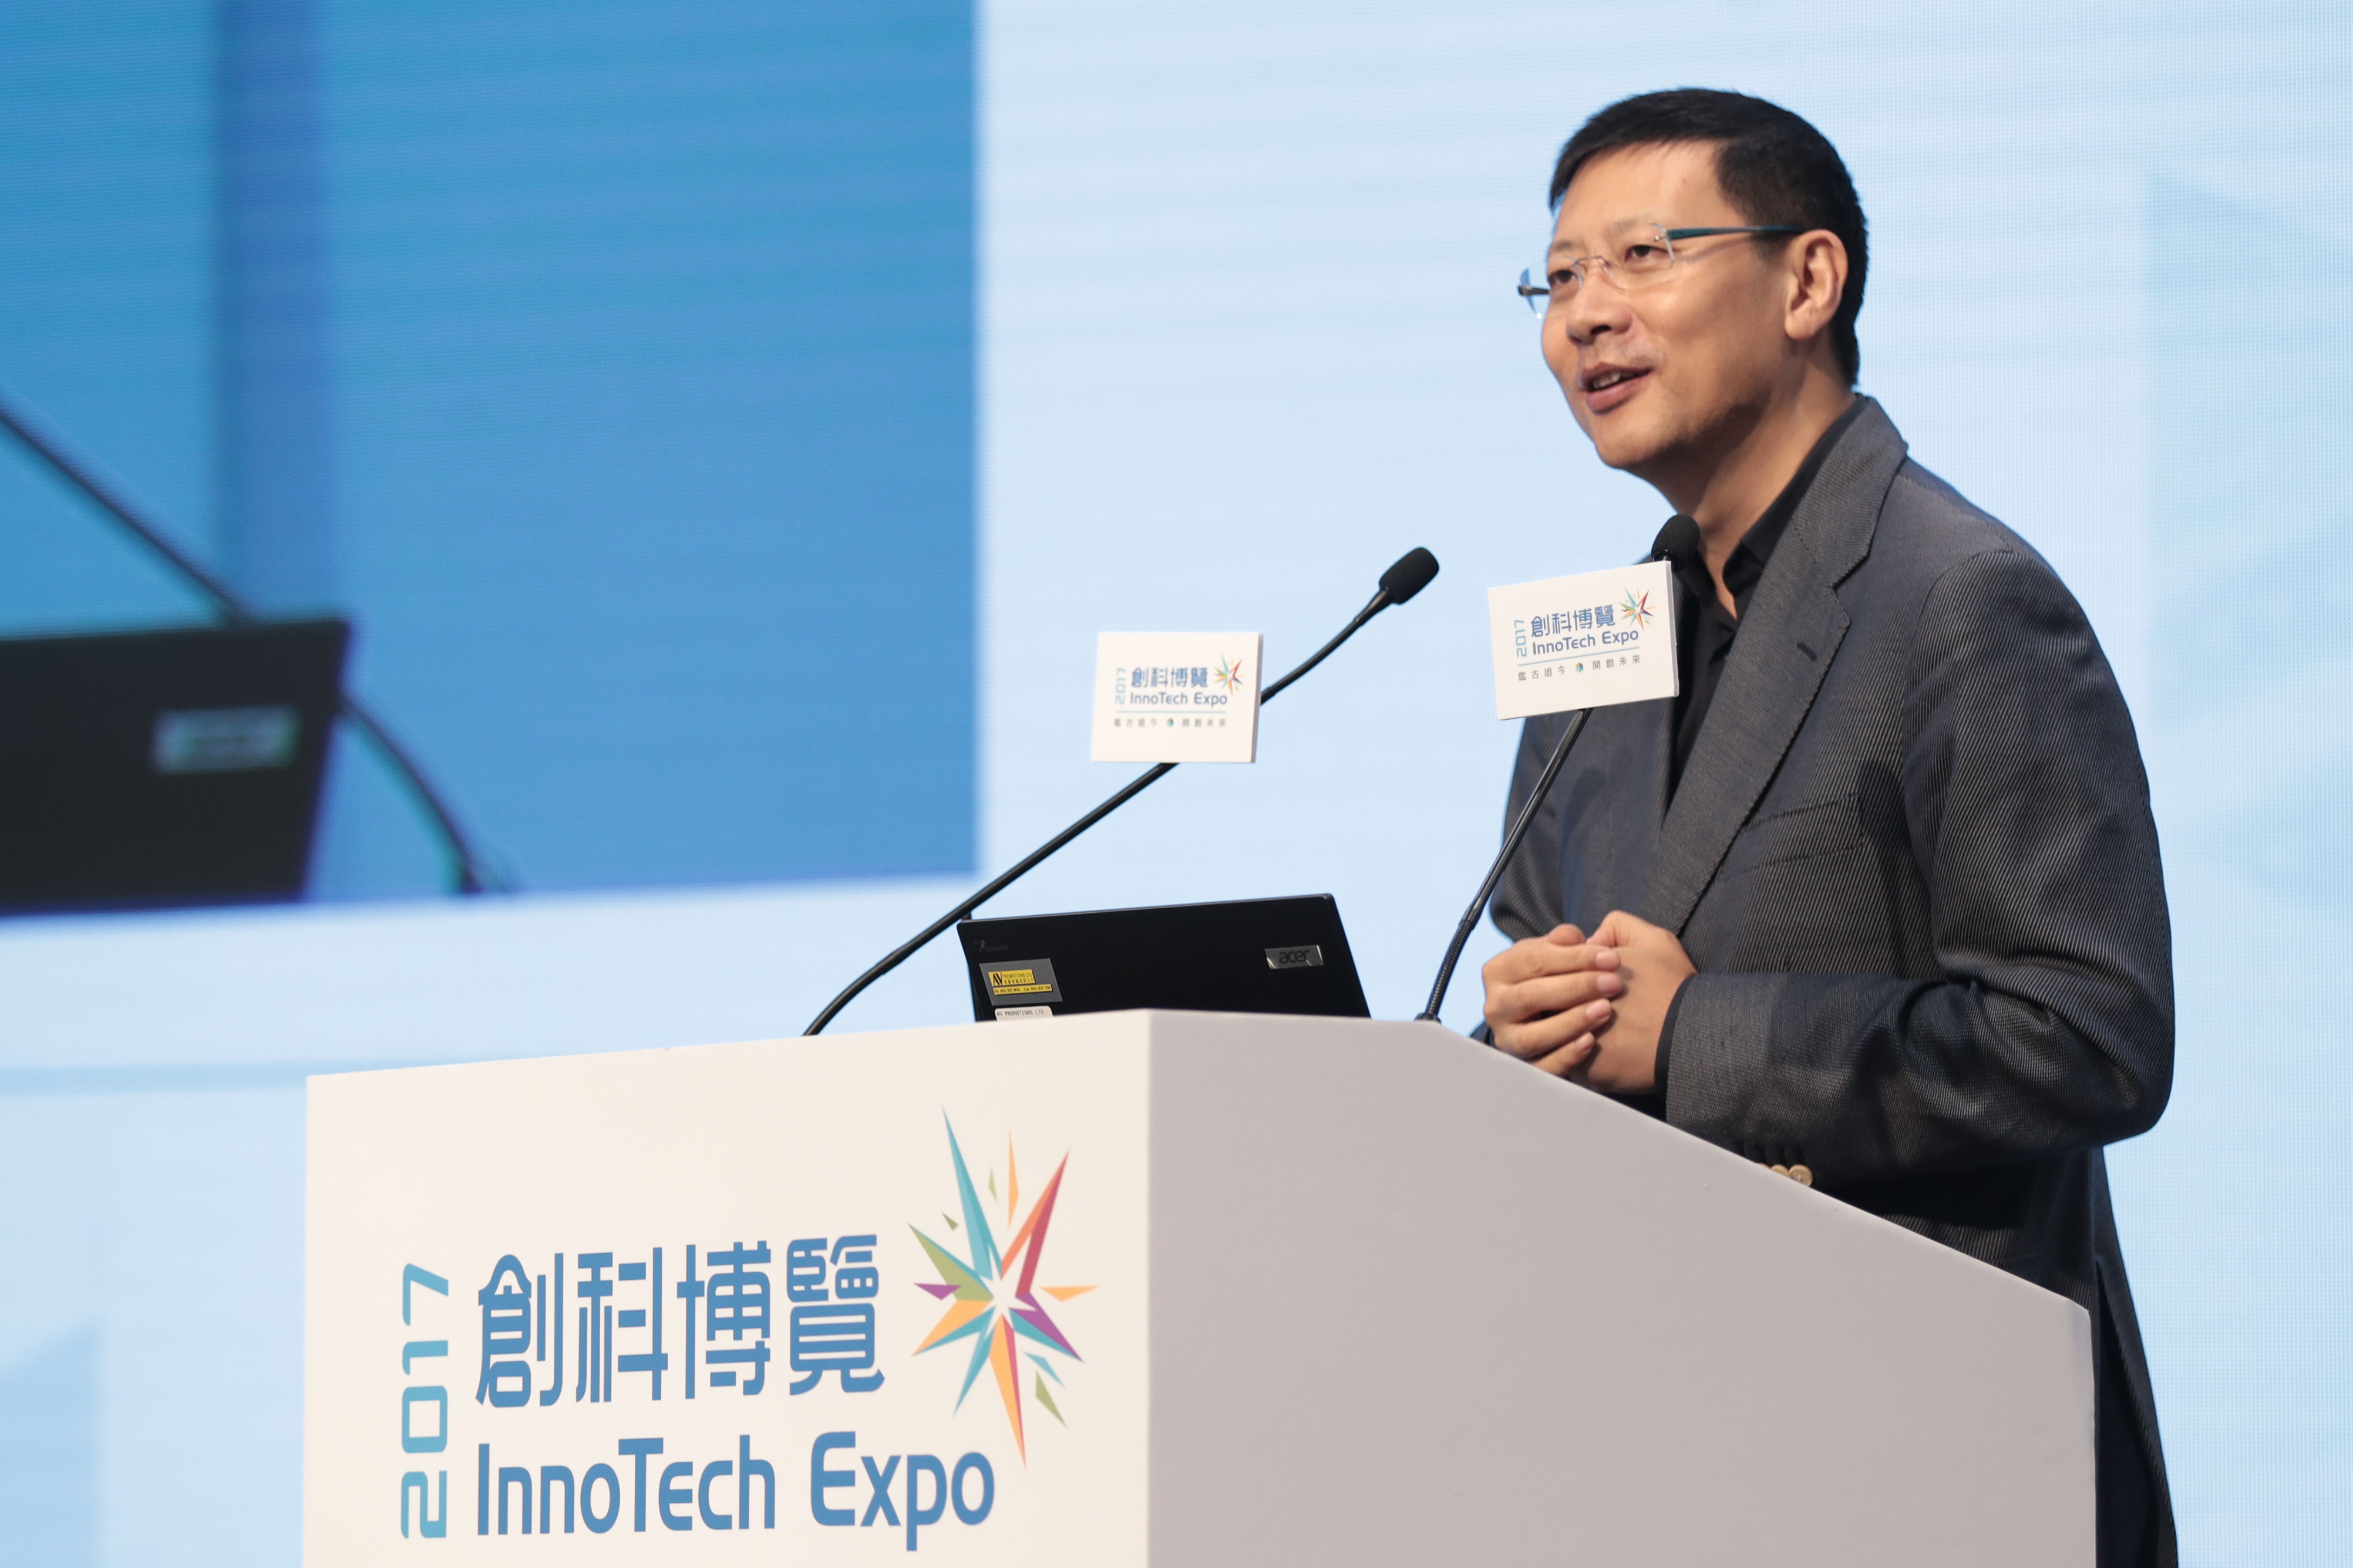 紅杉資本全球執行合夥人暨香港X科技創業平台主席沈南鵬先生分享創科成就如何成就其精彩人生。